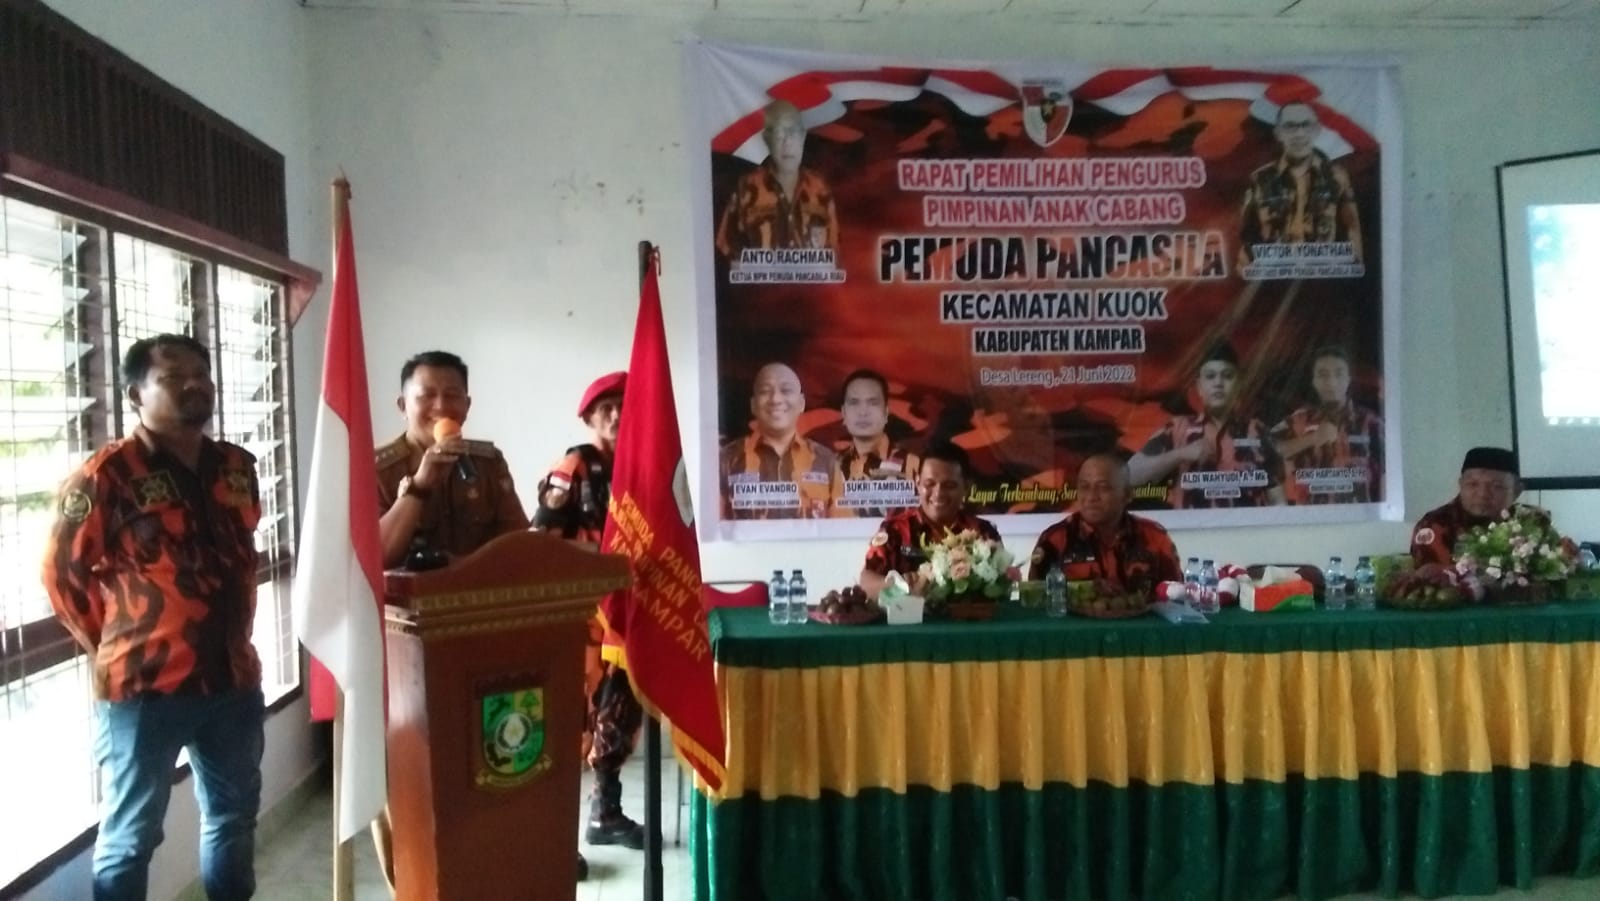 Rapat Pemilihan Pengurus PAC PP Kecamatan Kuok